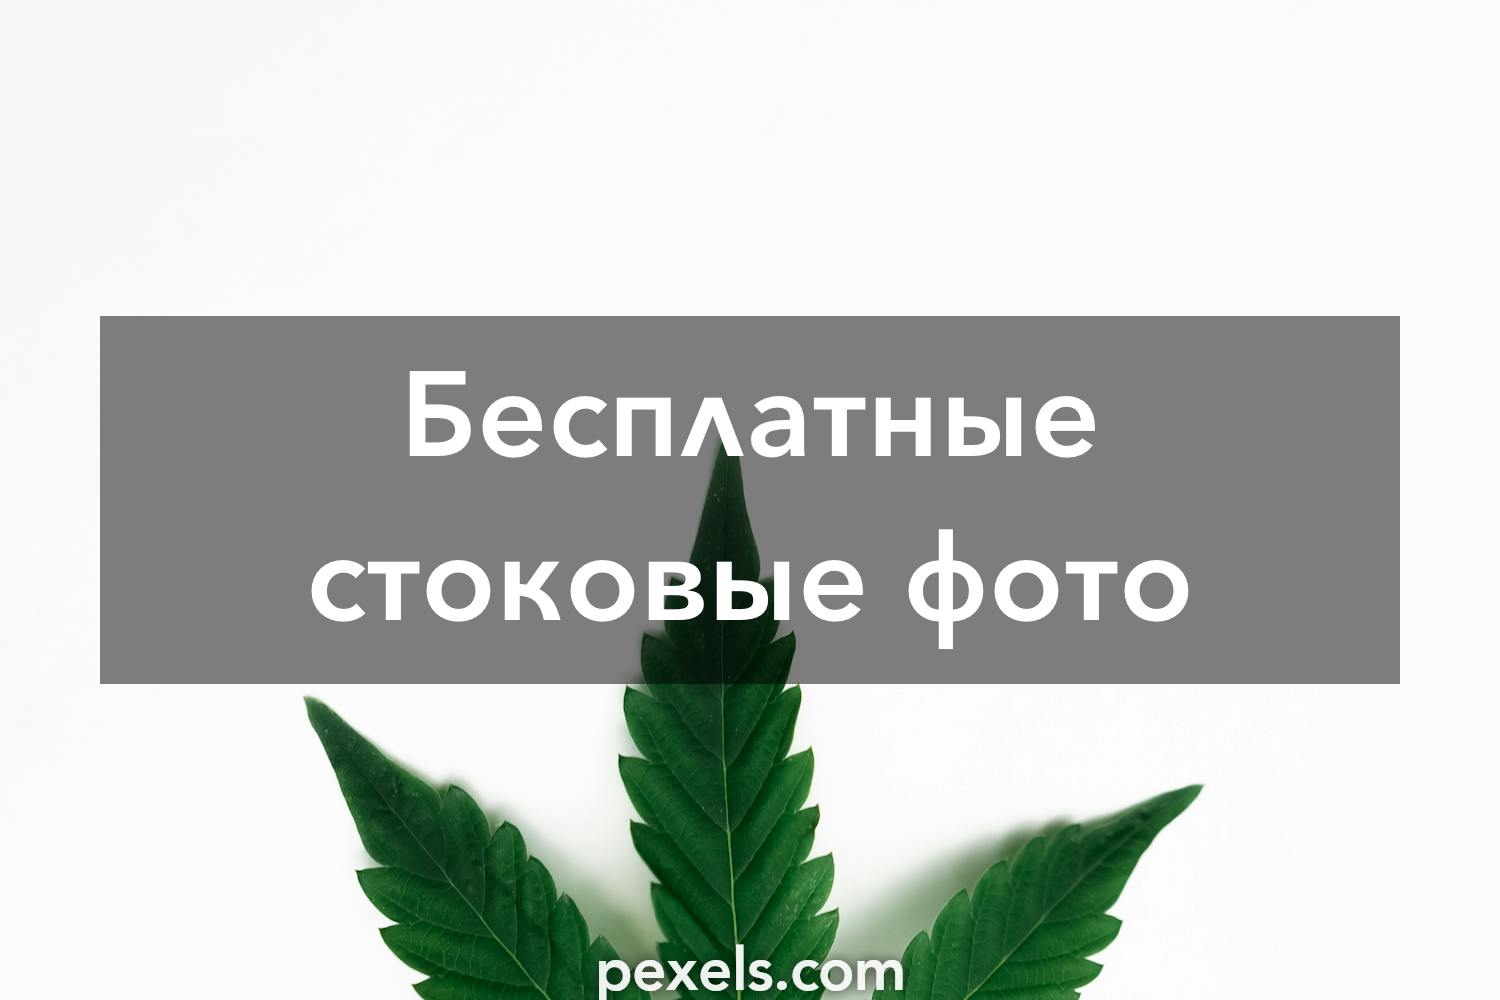 Смотреть бесплатно видео марихуана скачать tor browser на русском бесплатно для linux hyrda вход